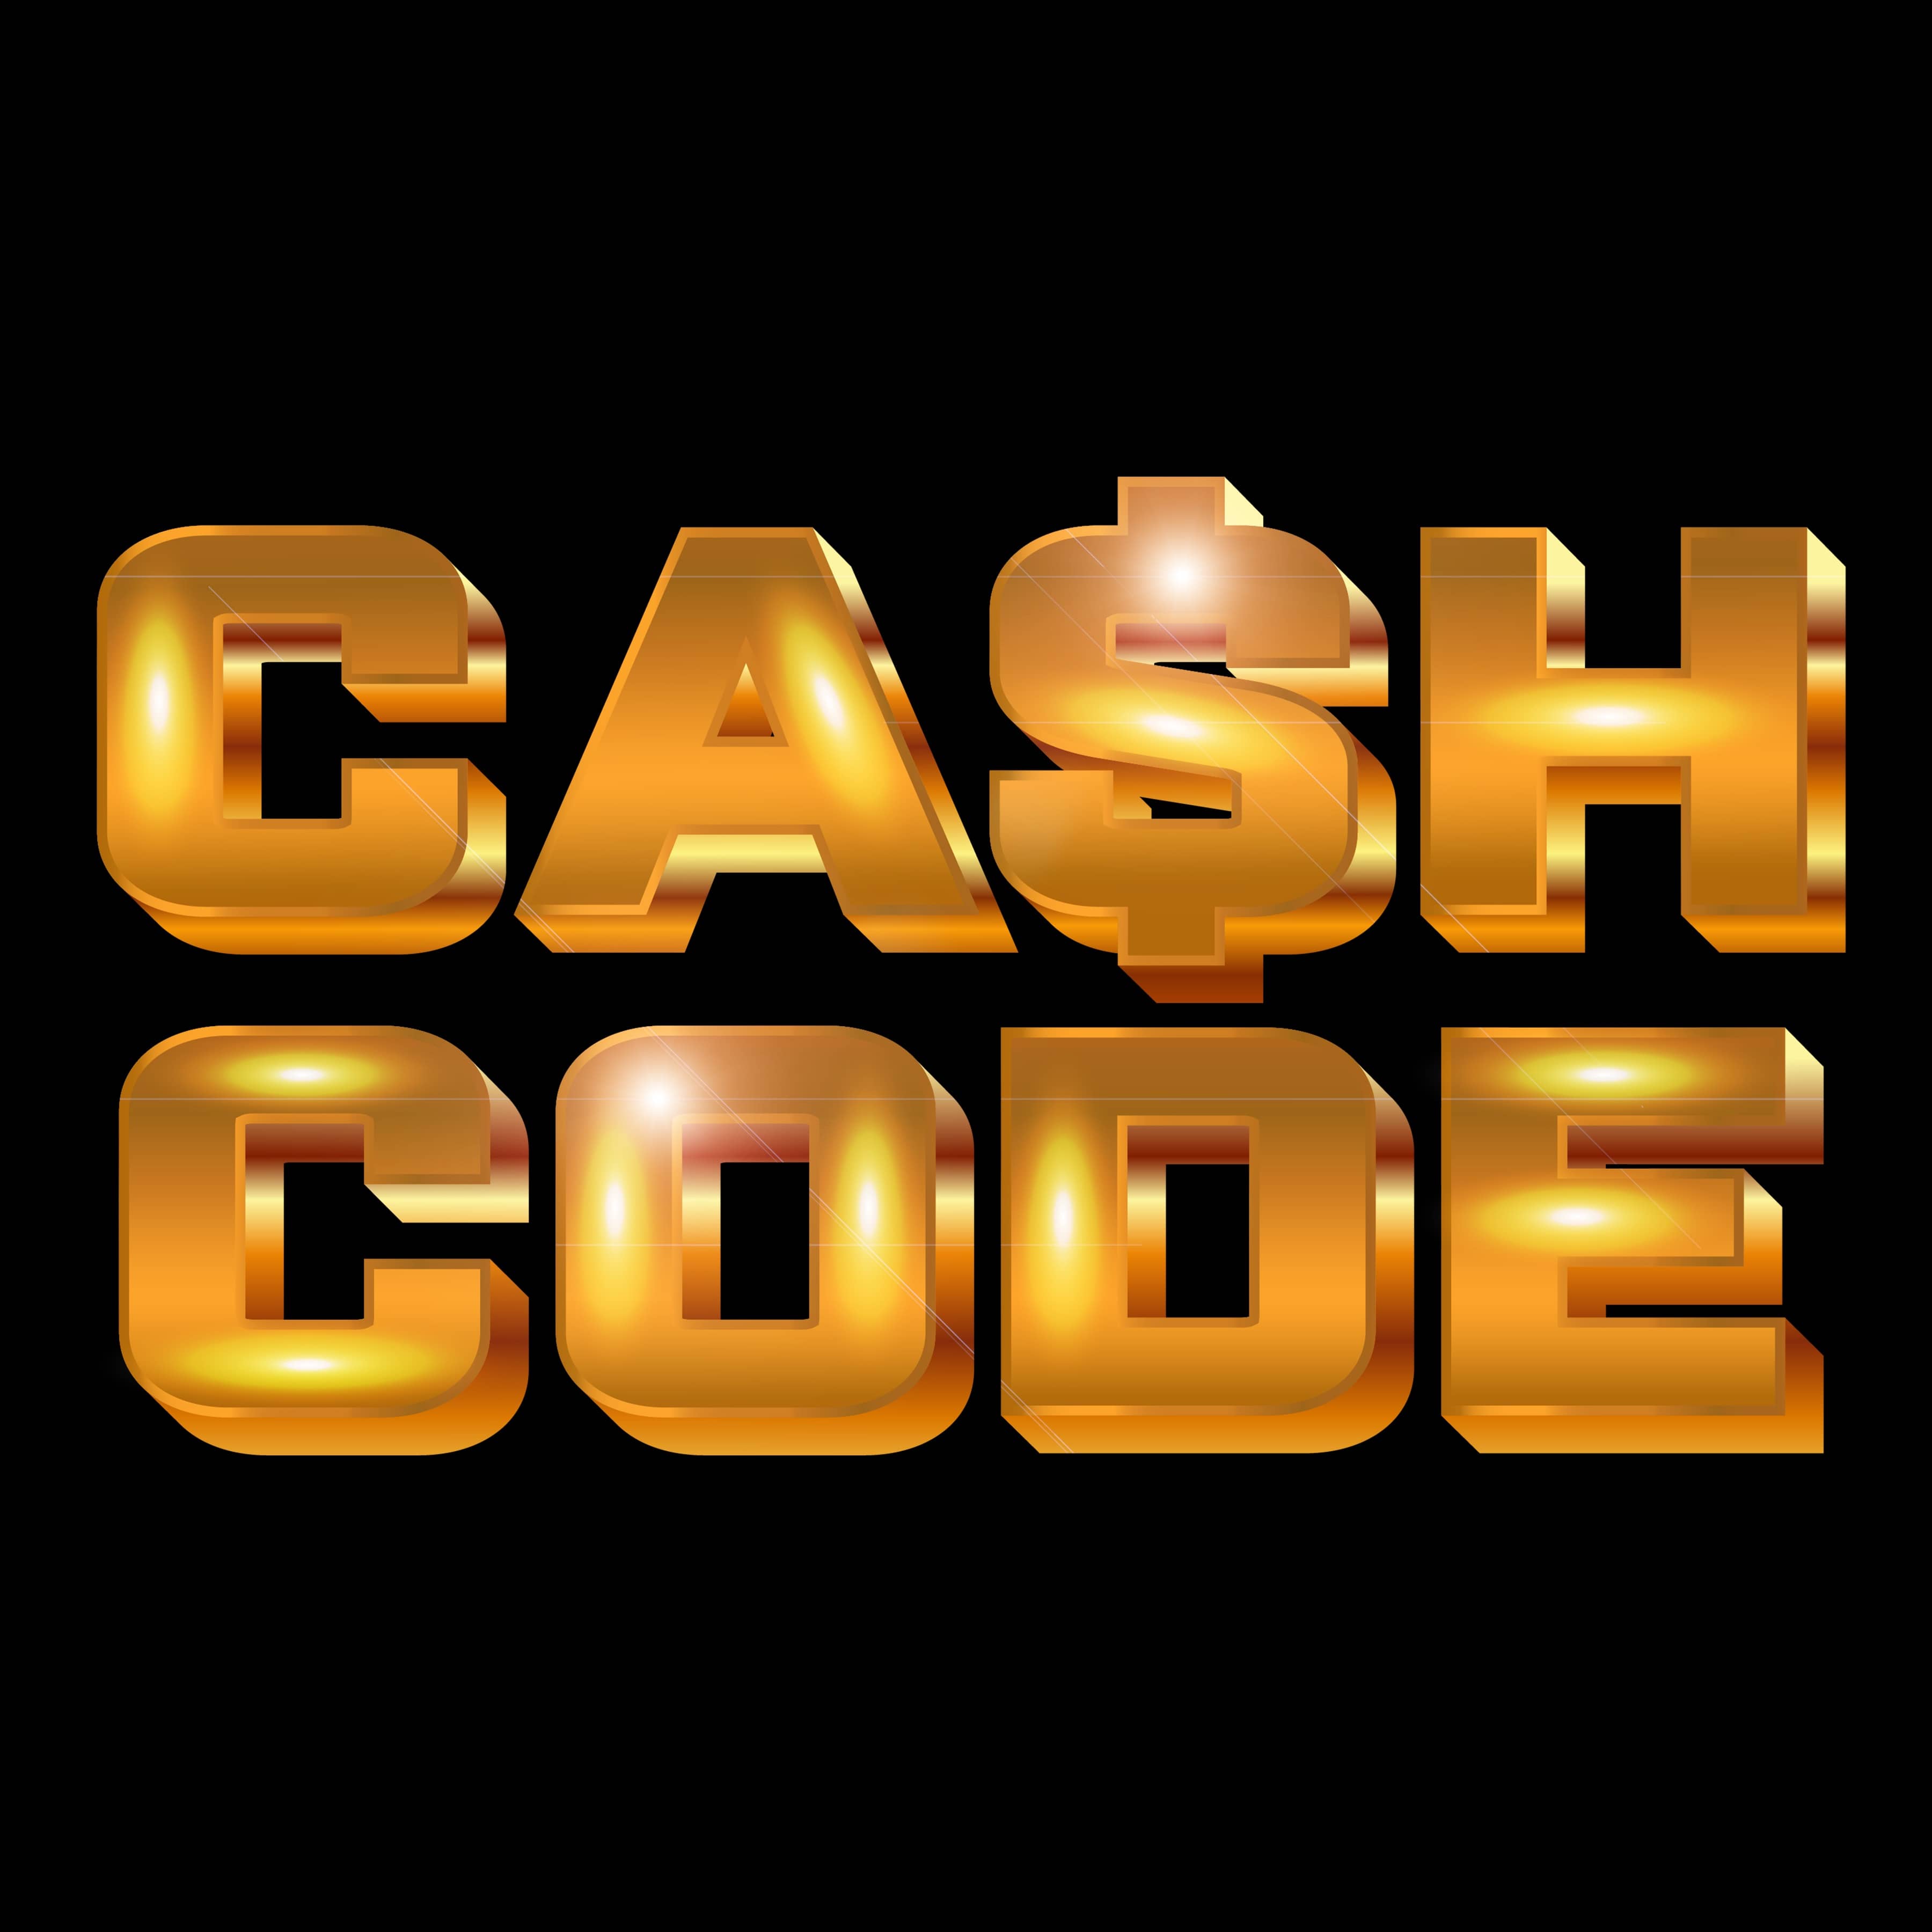 cash-code-gold-bar-logo-black-background-2